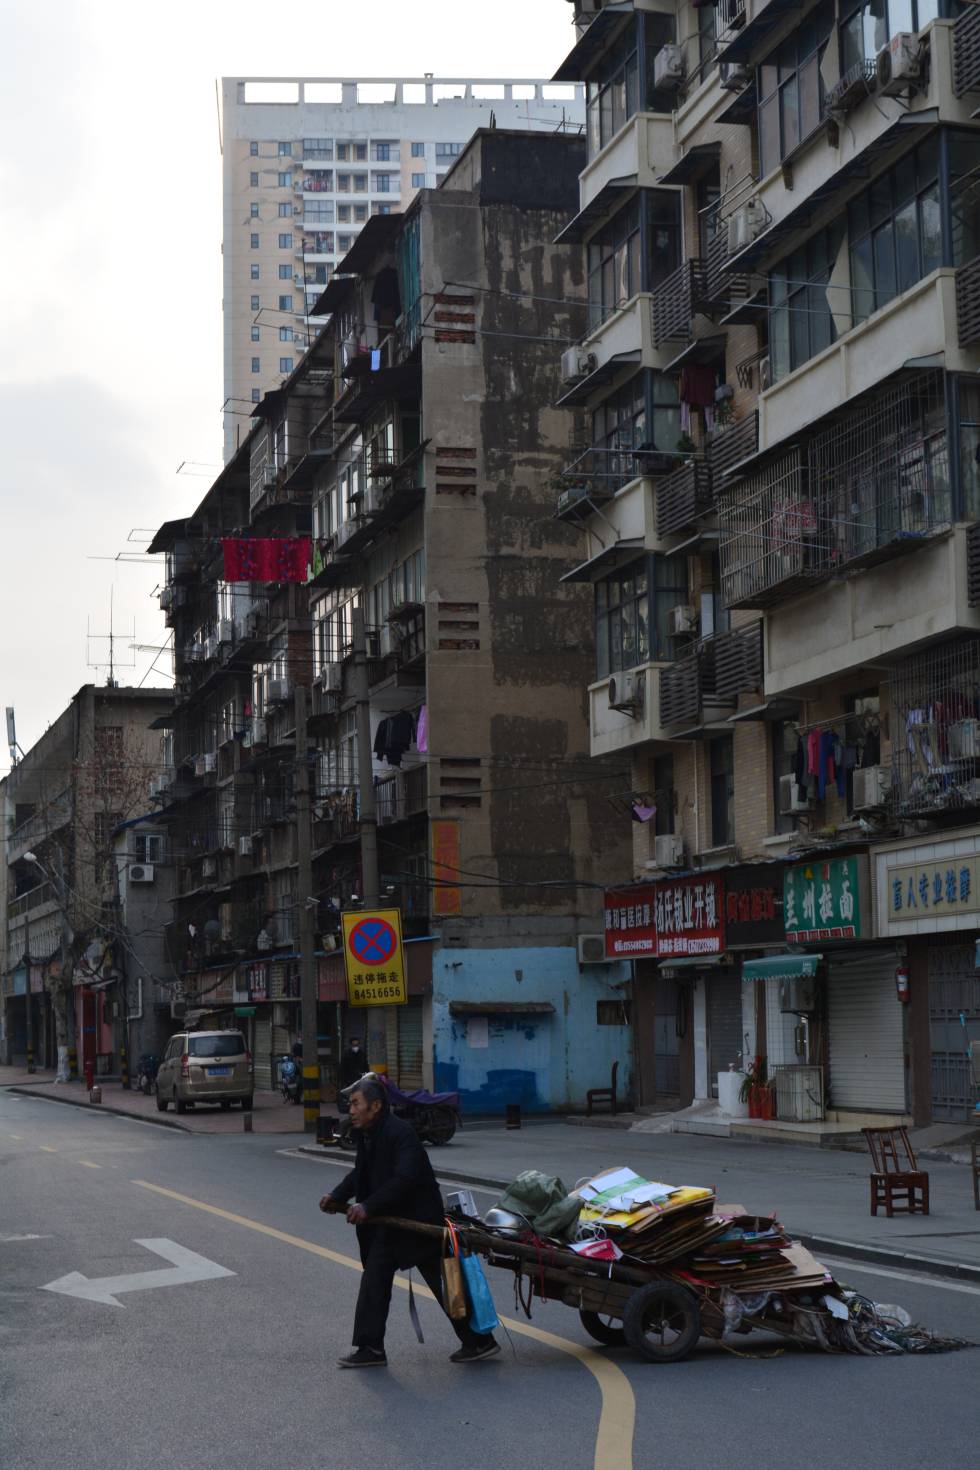 Retratos de Wuhan, una ciudad en cuarentena vista desde dentro